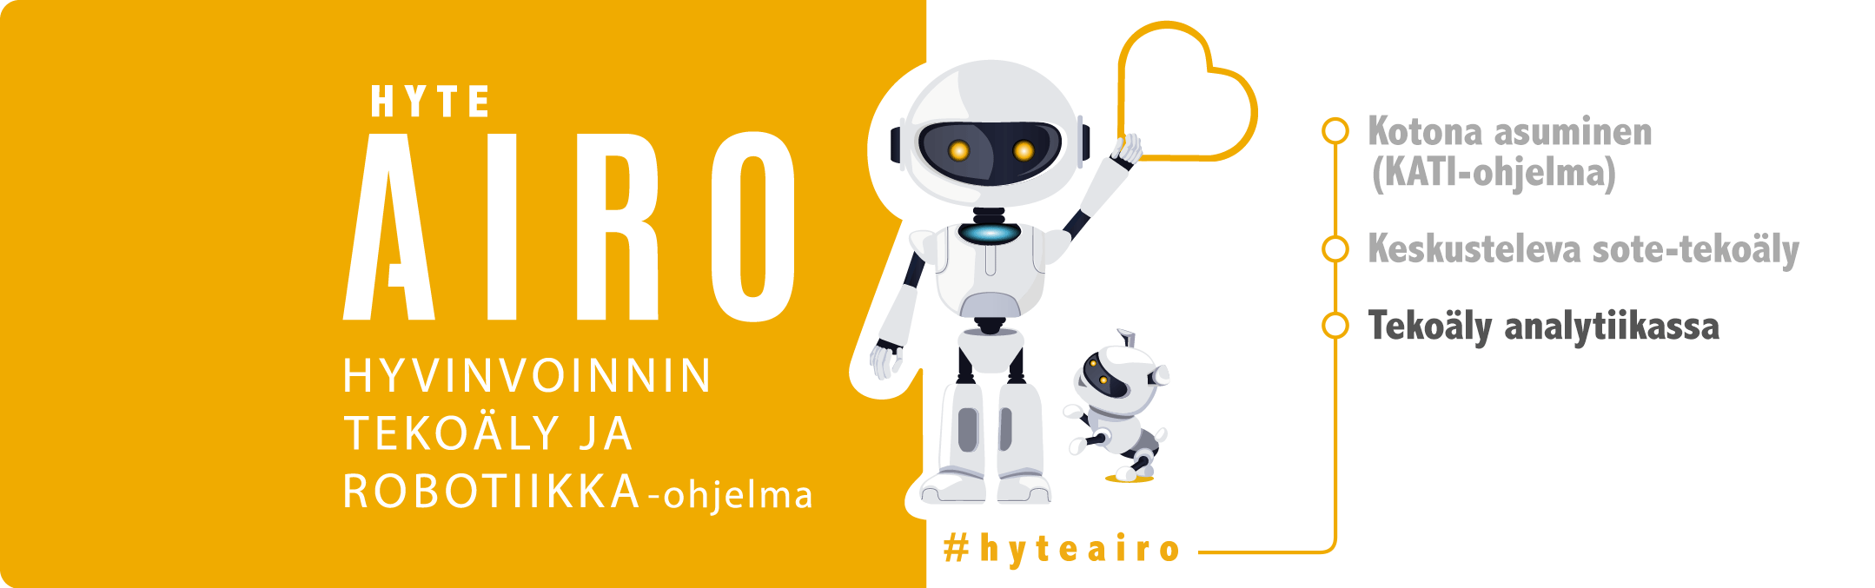 Hyteairon logo roboteilla, hyvinvoinnin ja tekoäly ja robotiikka-ohjelma. Kotona asuminen (KATI-ohjelma), Keskusteleva sote-tekoäly ja Tekoäly analytiikassa (boldattuna).